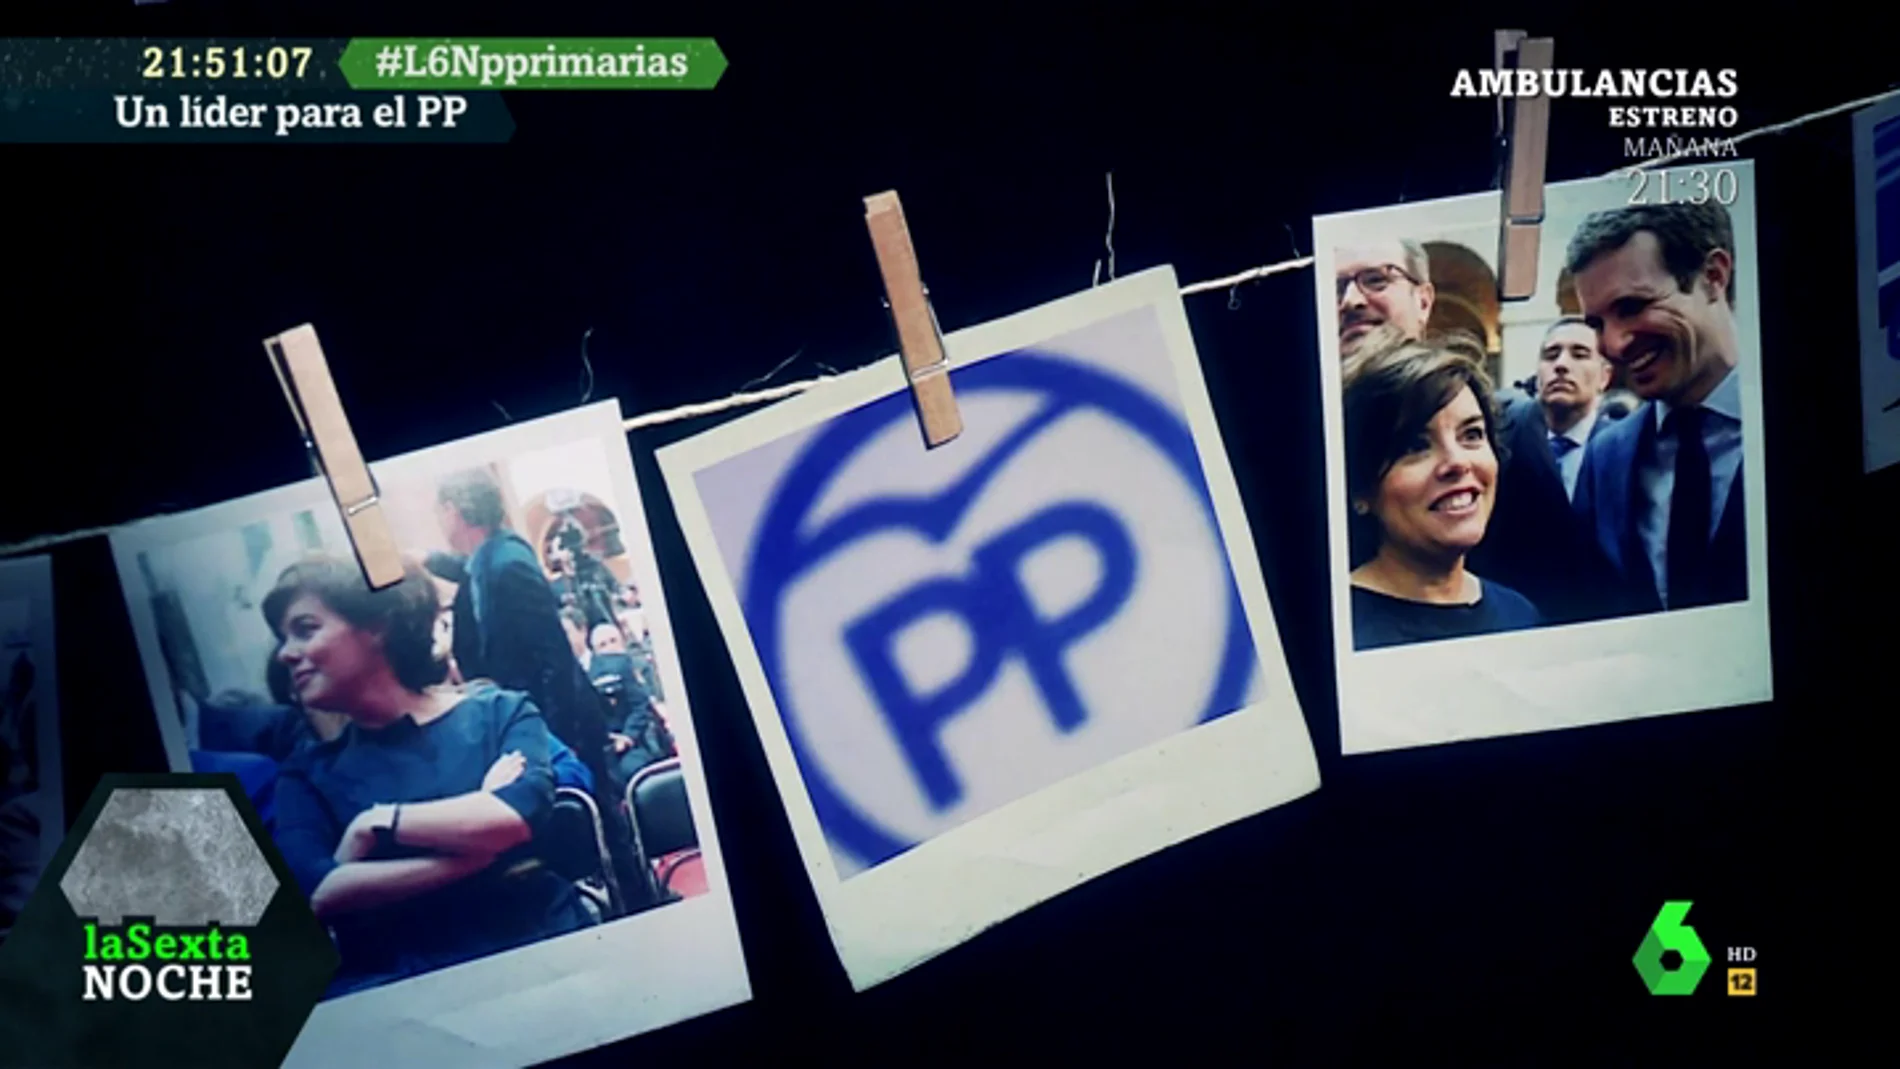 "Esta es una guerra subterránea del aparato": los expertos analizan la batalla entre Casado y Santamaría por liderar el PP